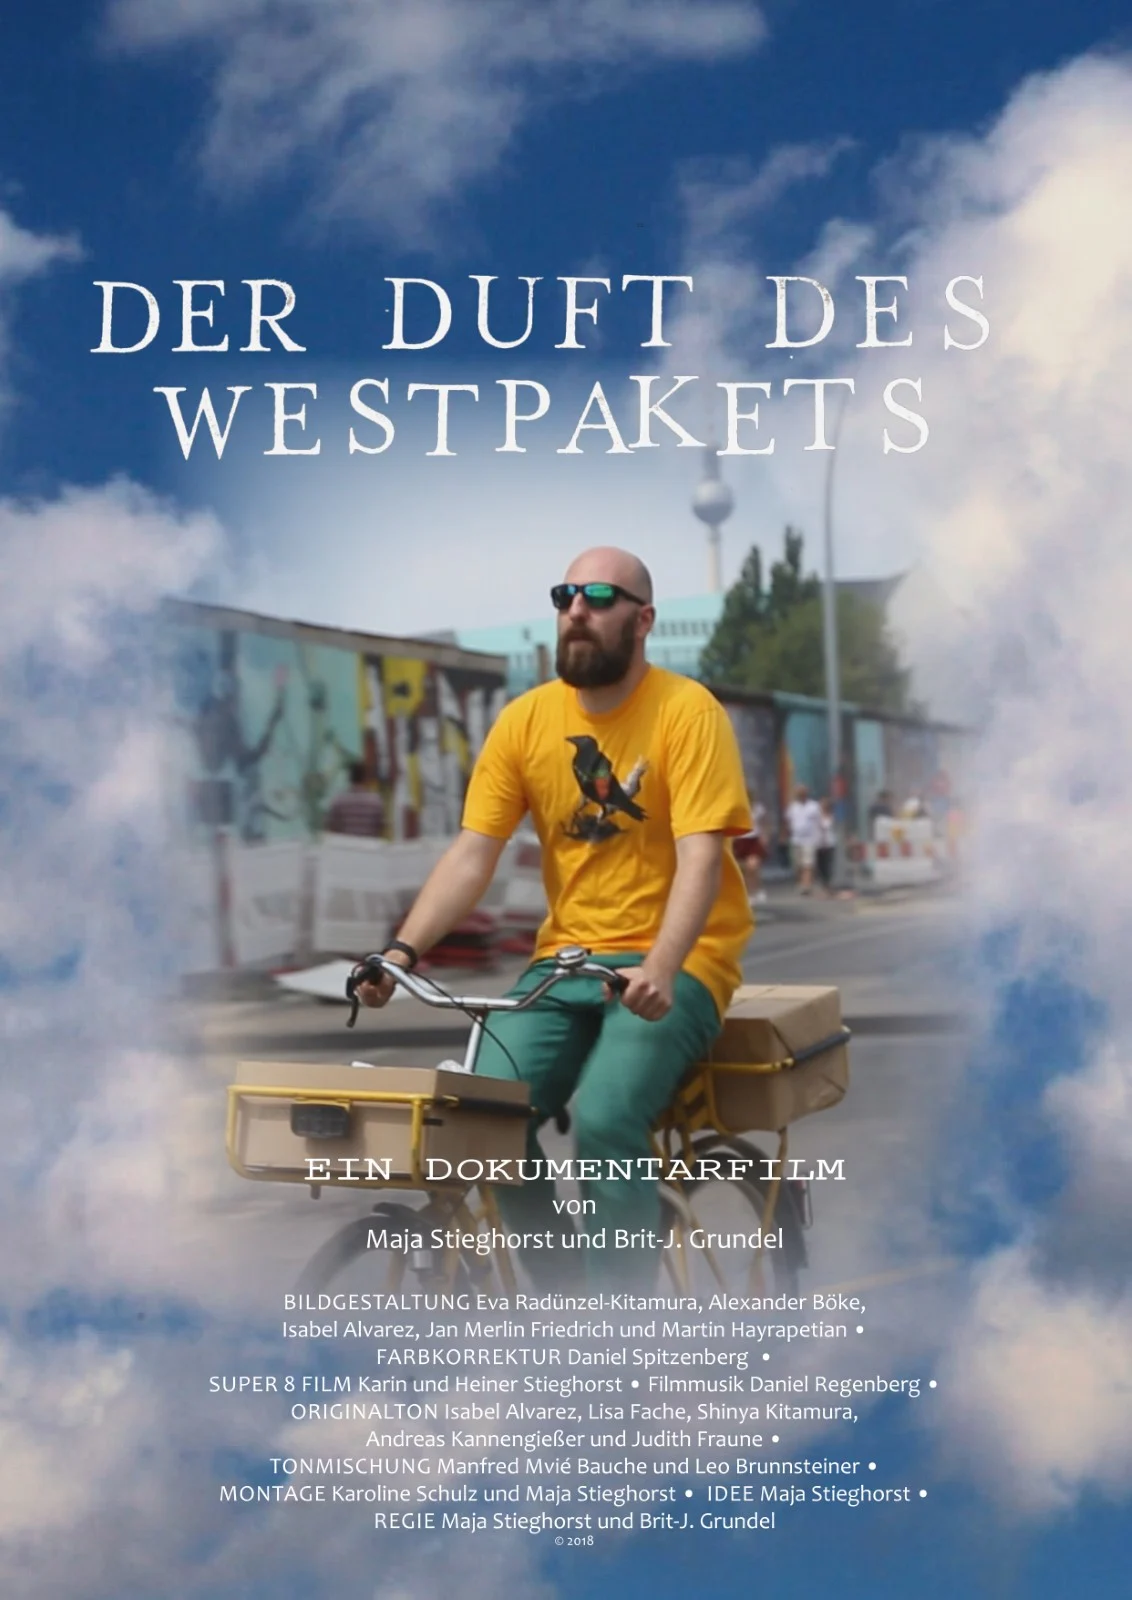 Kino im Saal - "Der Duft des Westpakets" (2019)